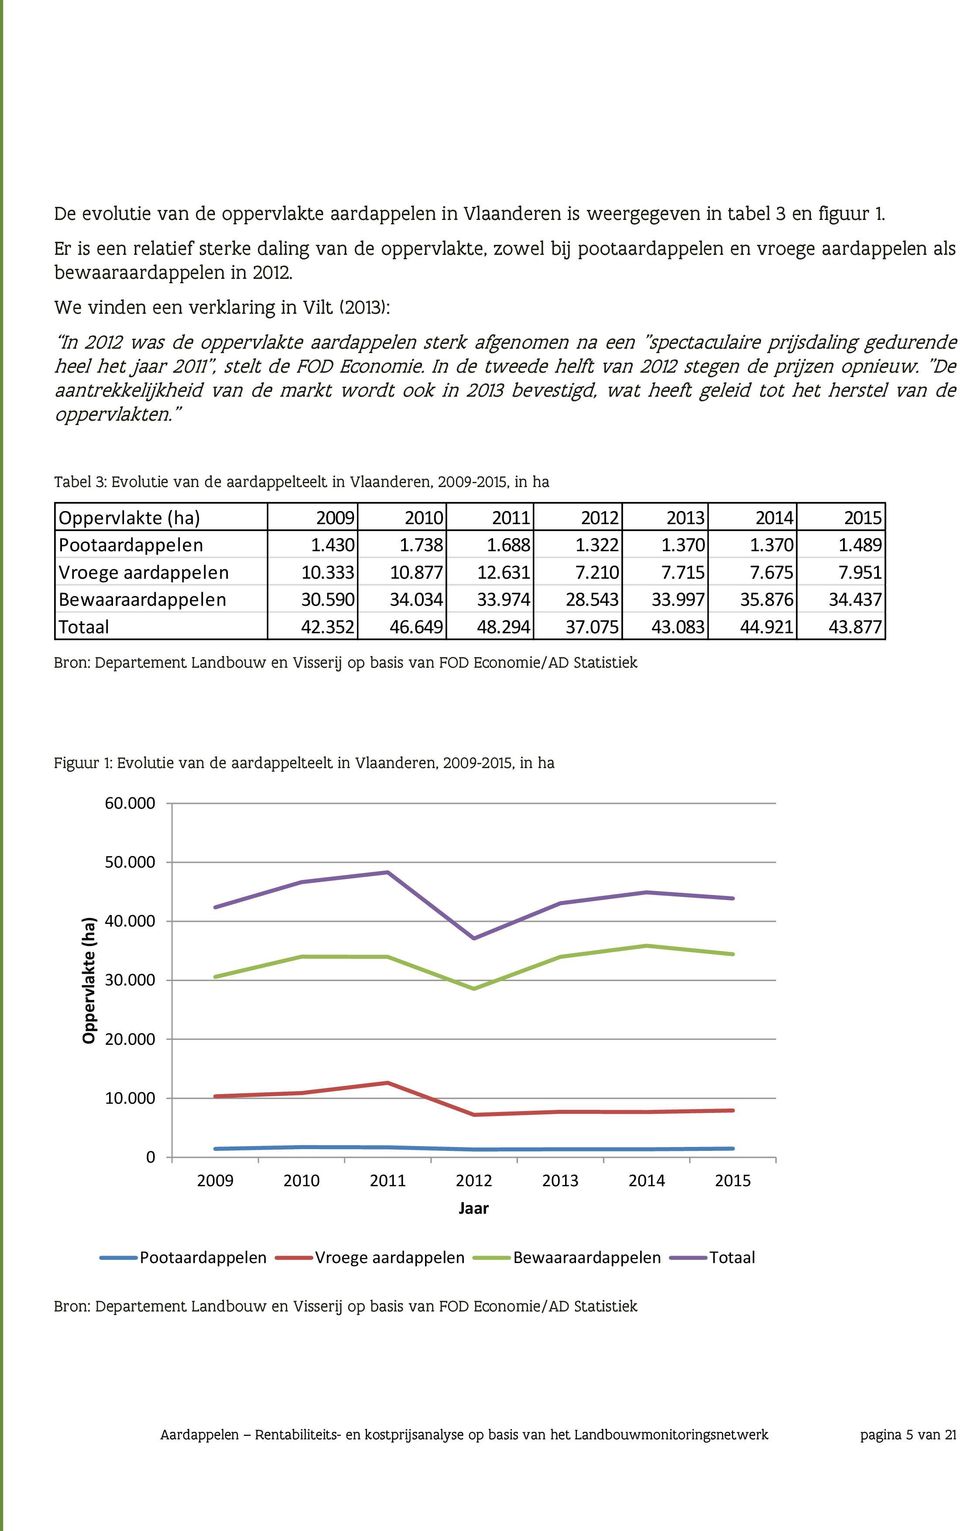 We vinden een verklaring in Vilt (2013): In 2012 was de oppervlakte aardappelen sterk afgenomen na een "spectaculaire prijsdaling gedurende heel het jaar 2011", stelt de FOD Economie.